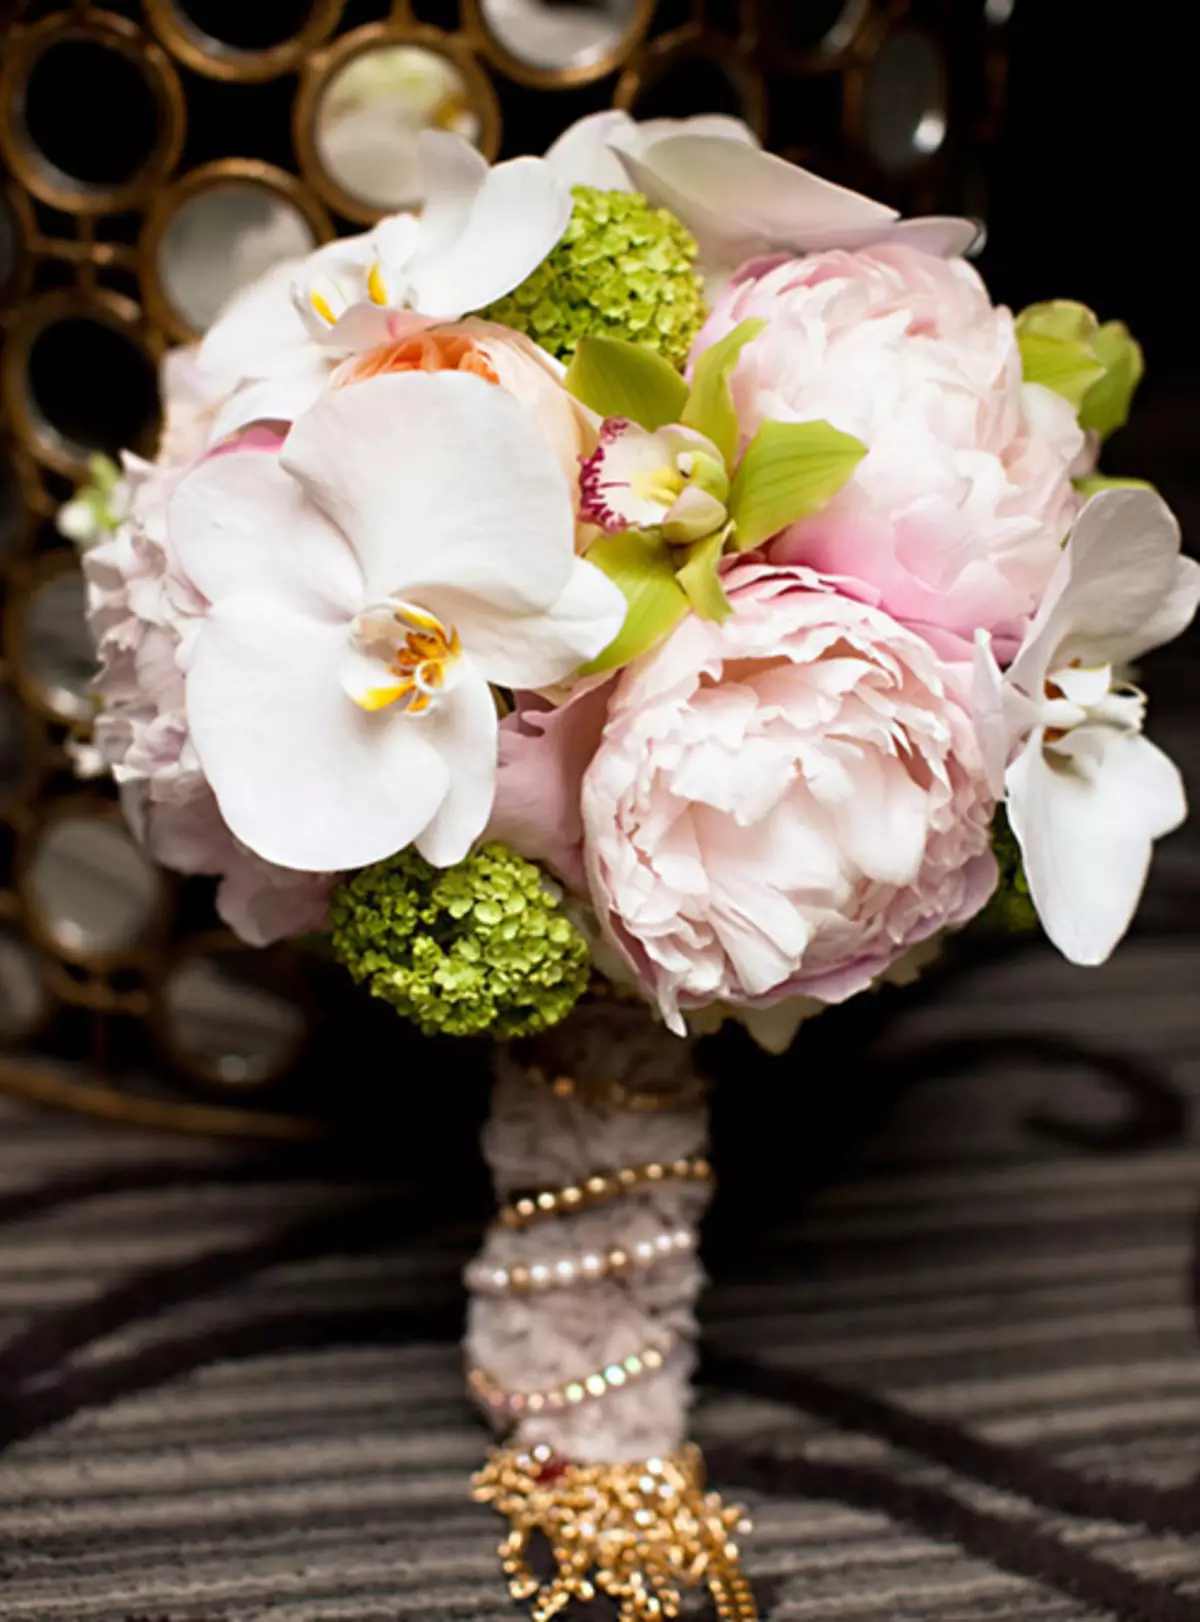 모란의 결혼식 꽃다발 (108 사진) : 흰색 수문과 빨간 칼라와의 조합, 결혼식 꽃다발의 부르고뉴, 라일락 및 자주색 꽃의 조합 8013_73